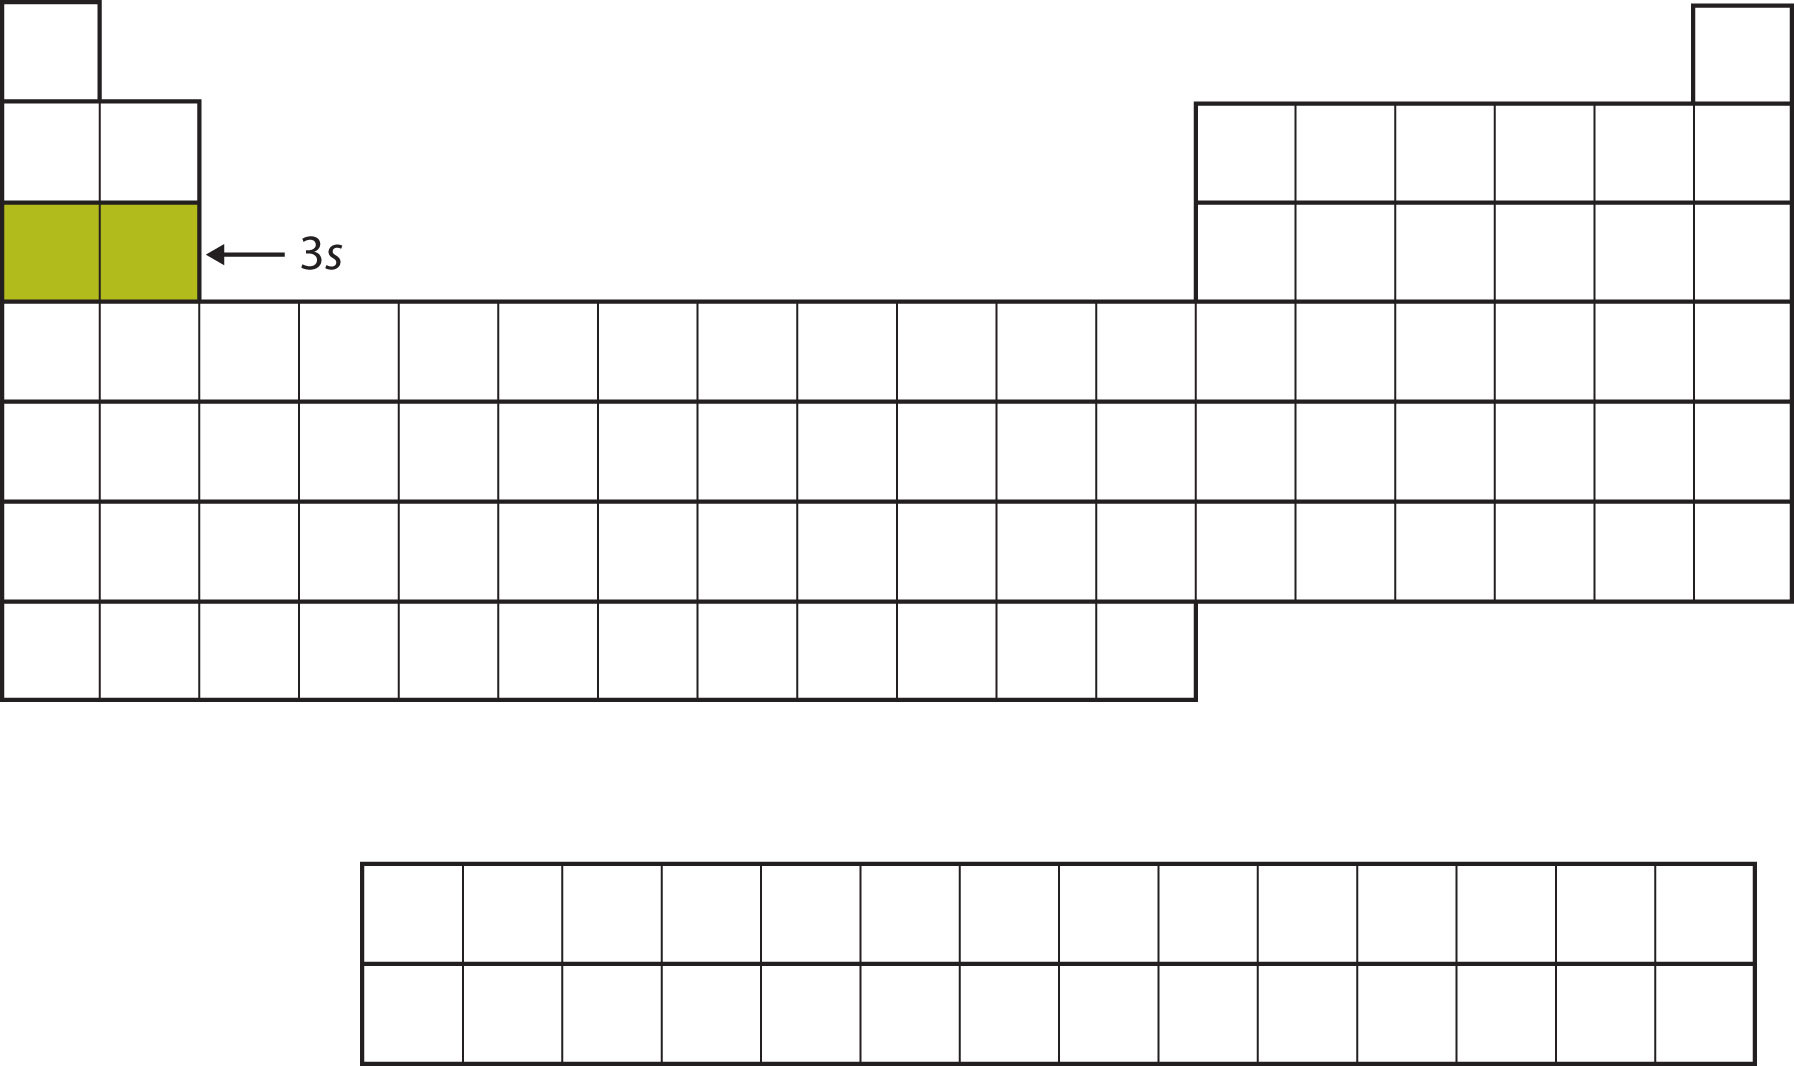 Tabla periódica vacía, con 2 cuadrados en la tercera fila a la izquierda rellenados en un color verde mostaza.